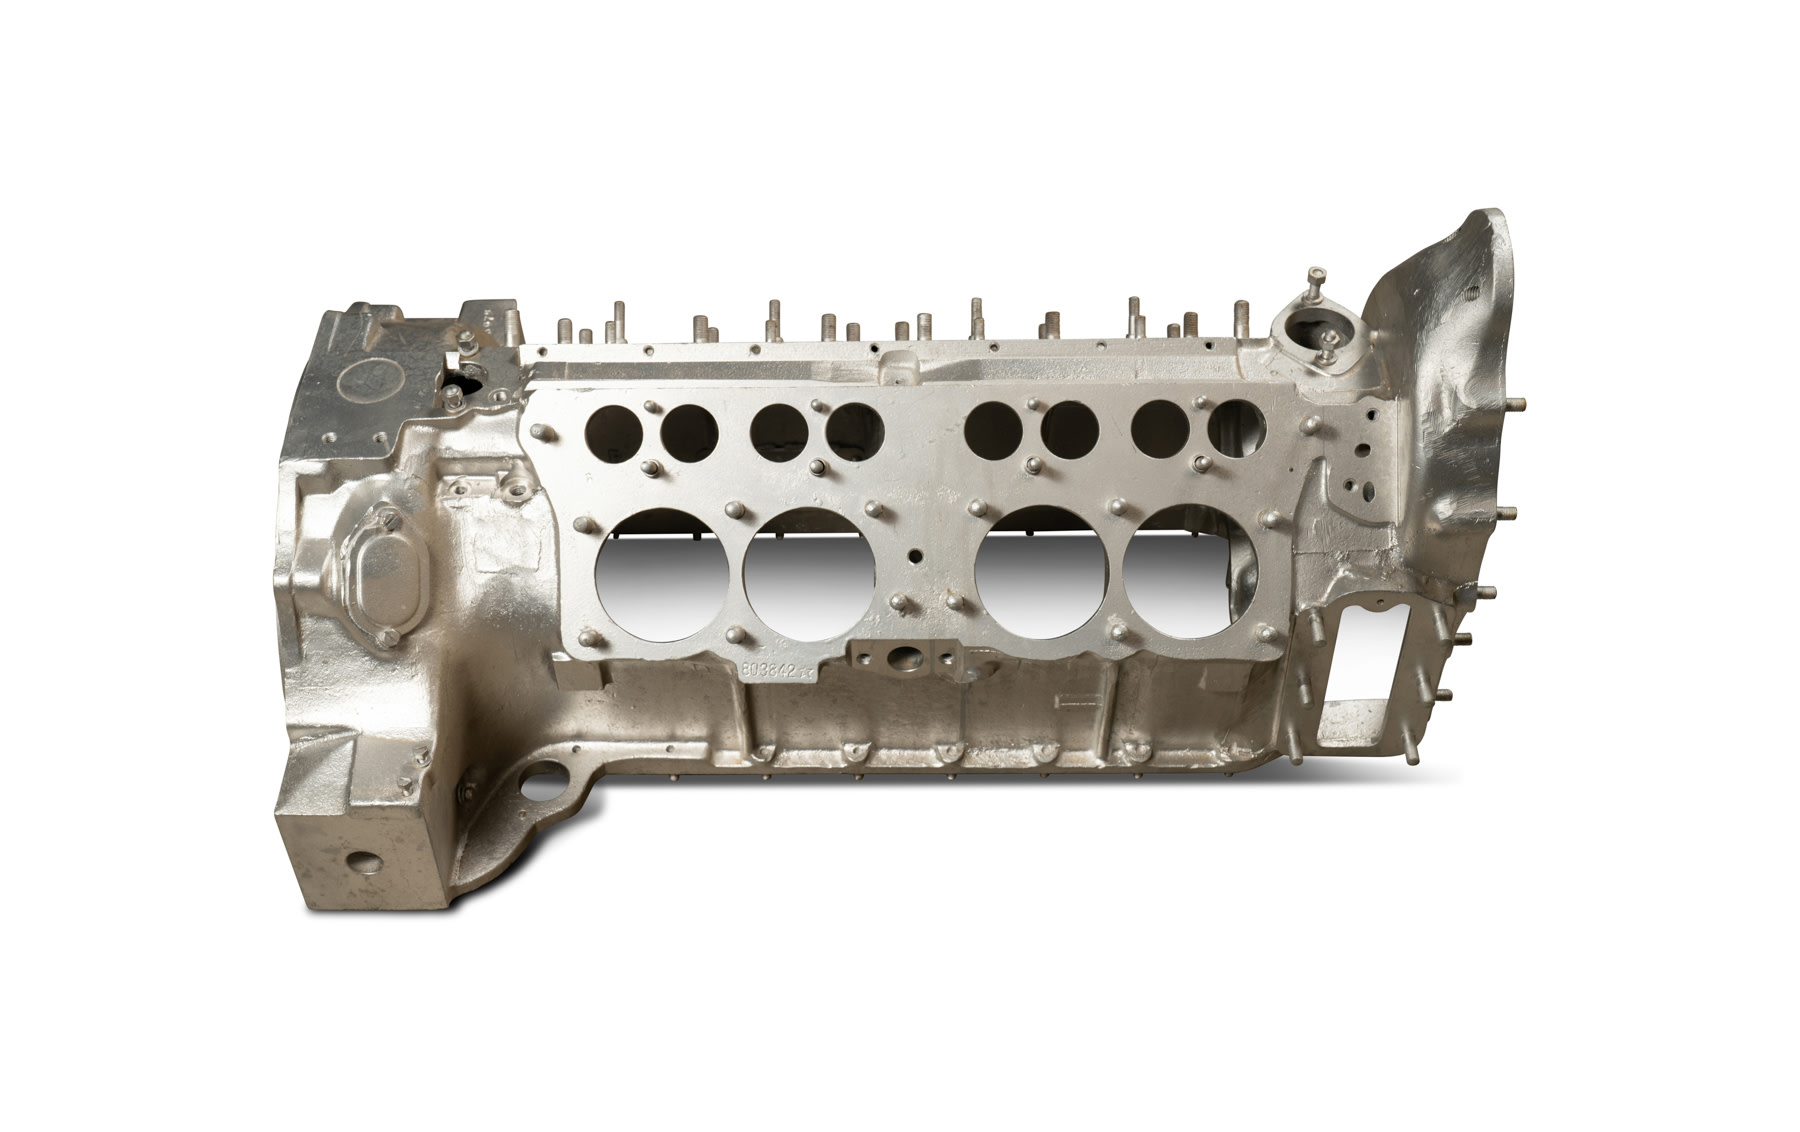 Alloy V-8 Engine Crankcase of Unknown Origin